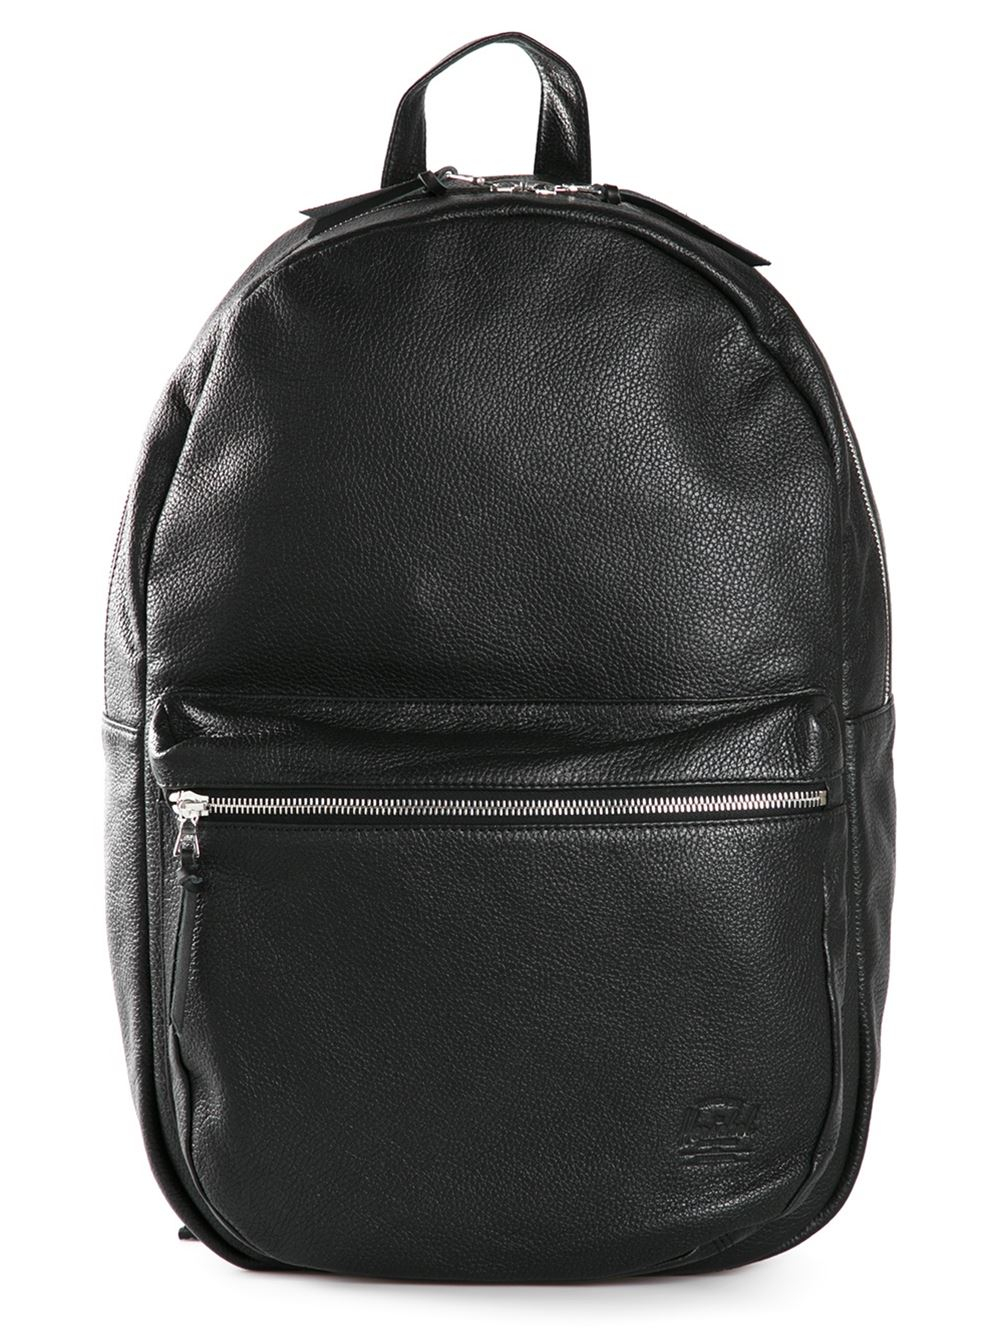 Herschel Supply Co. 'Bad Hills Lawson' Backpack in Black for Men - Lyst